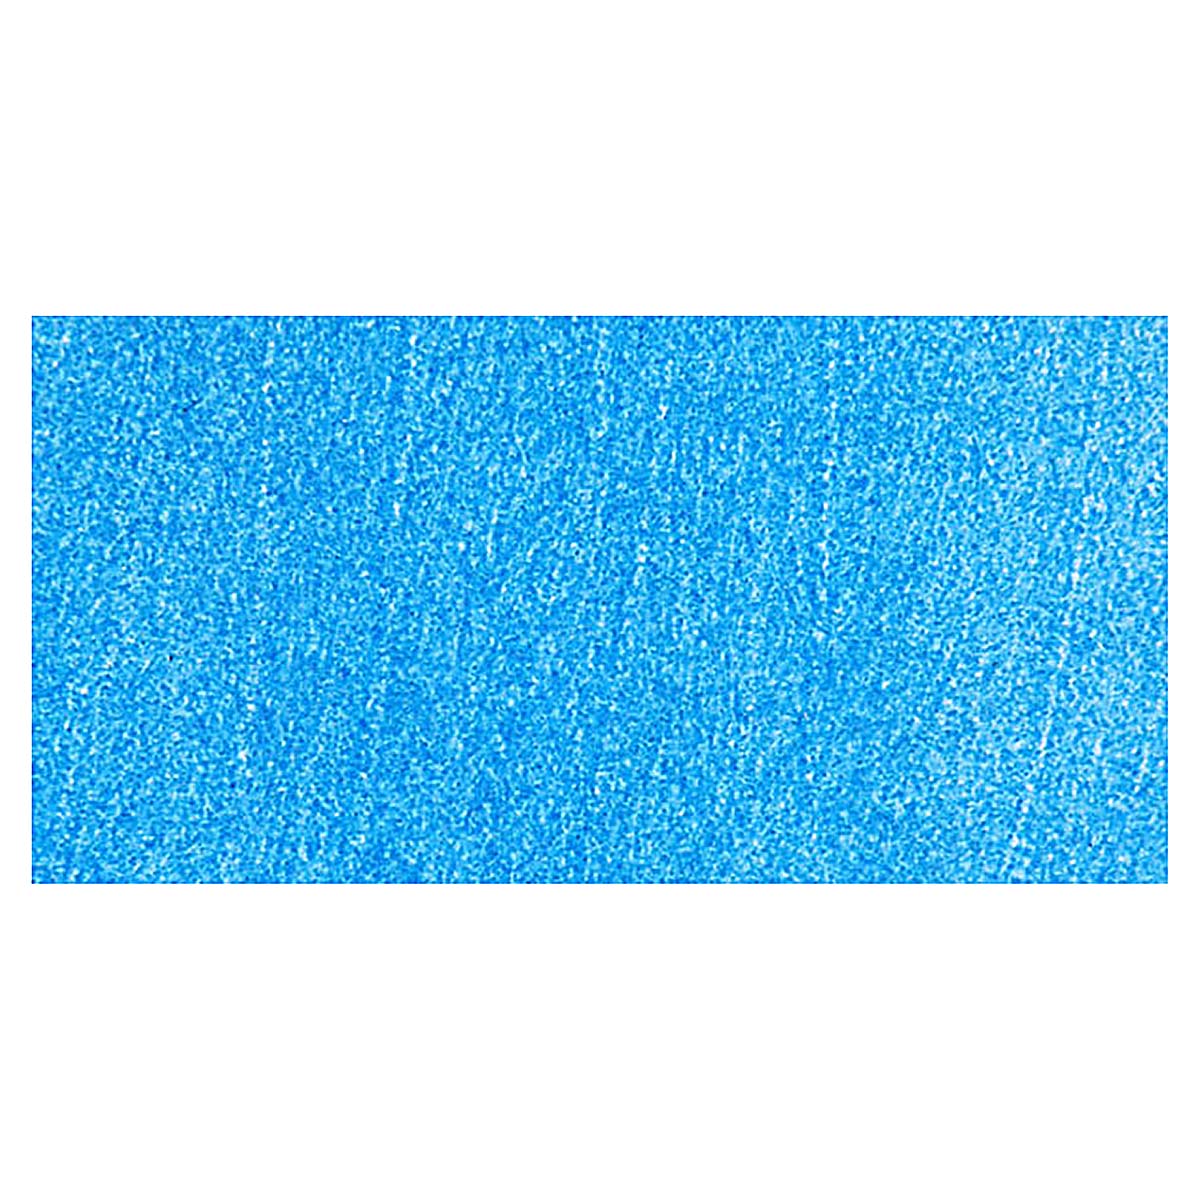 Handy Art Washable Paint - Blue, 16 oz